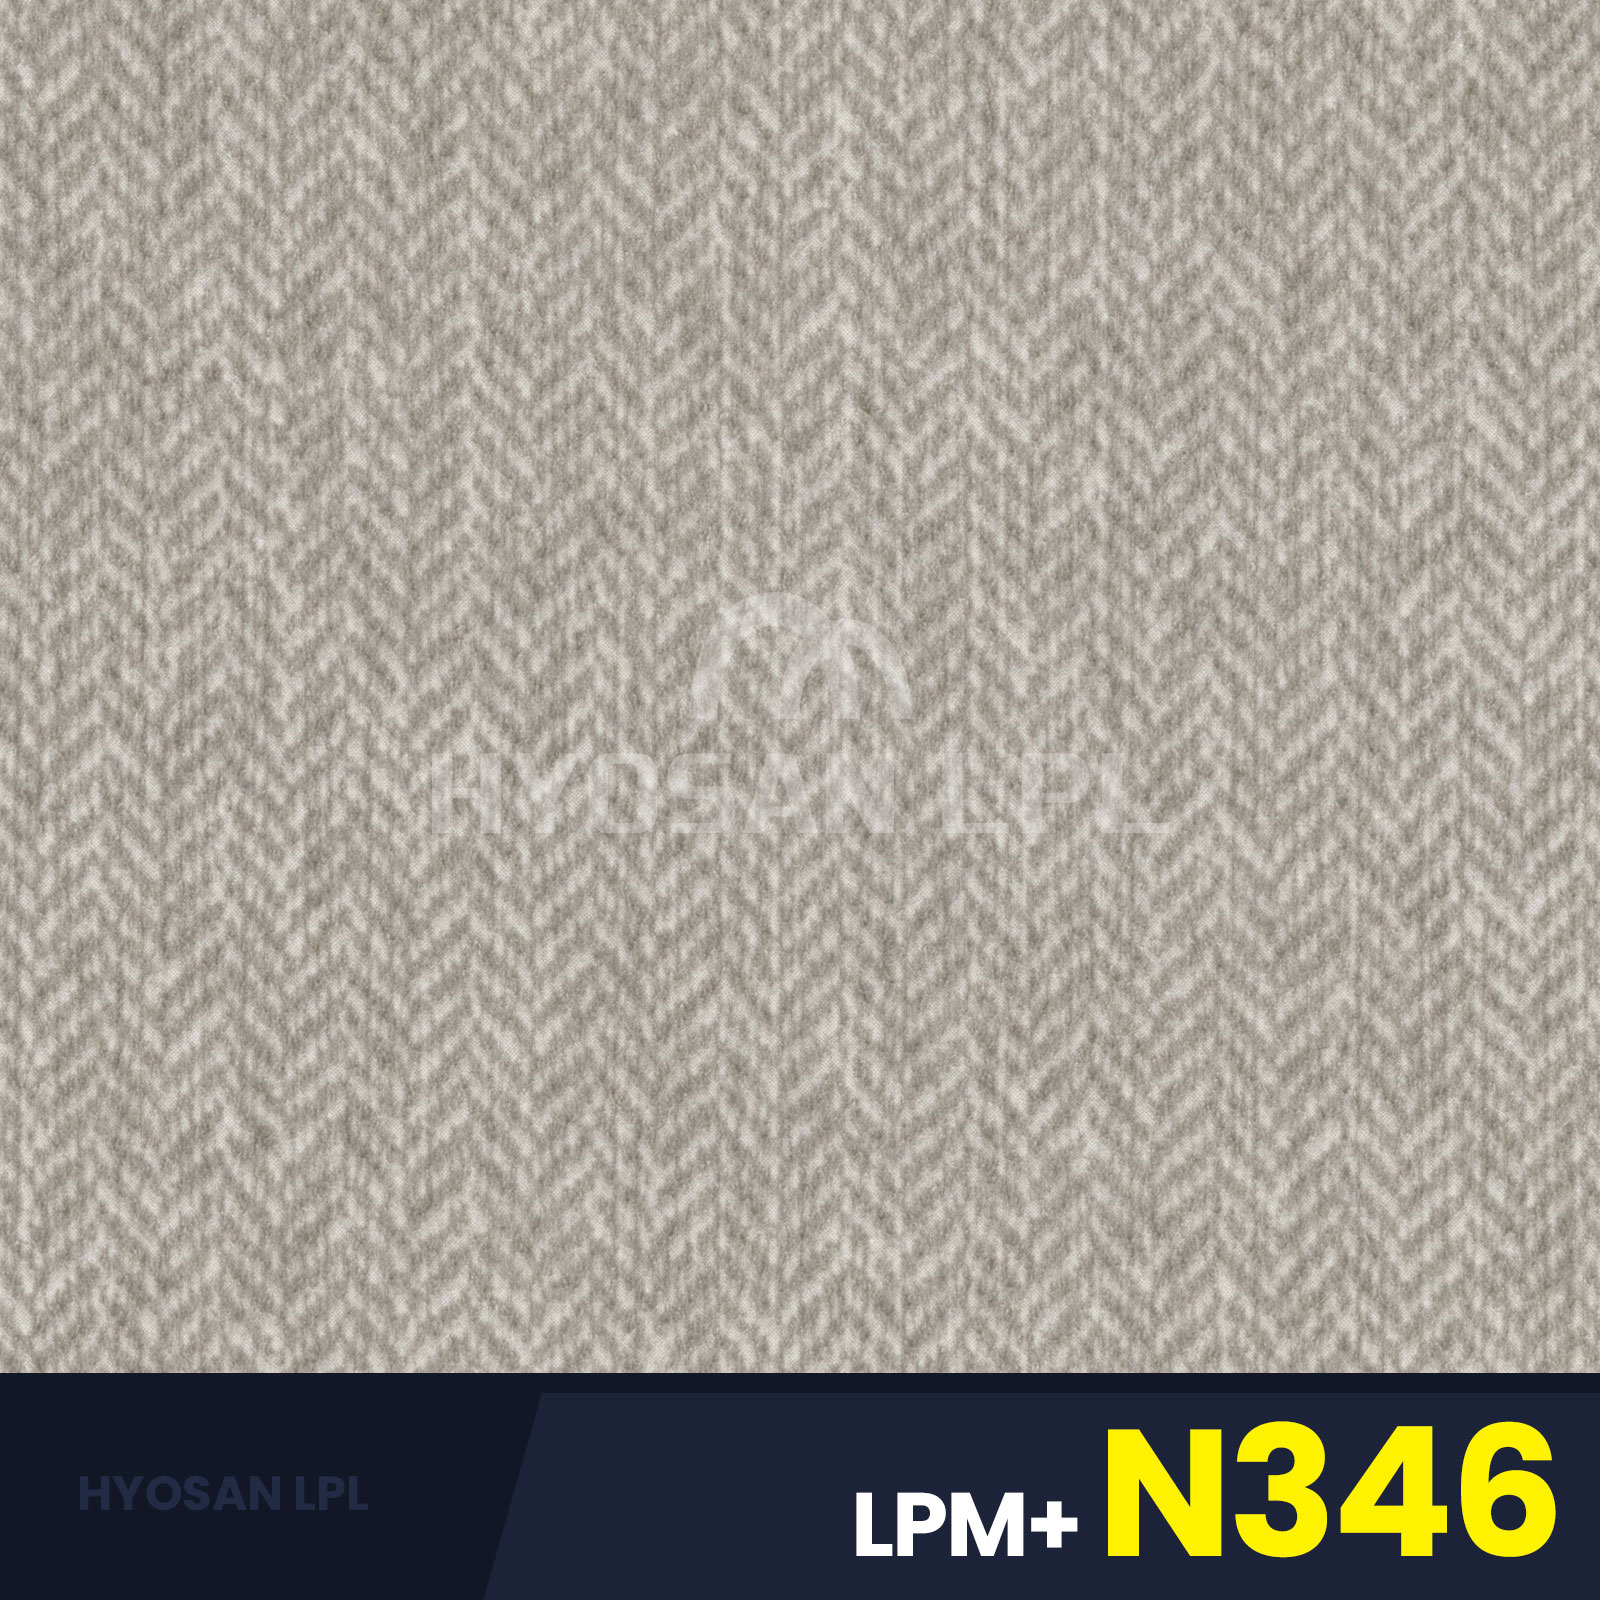 LPM+N346